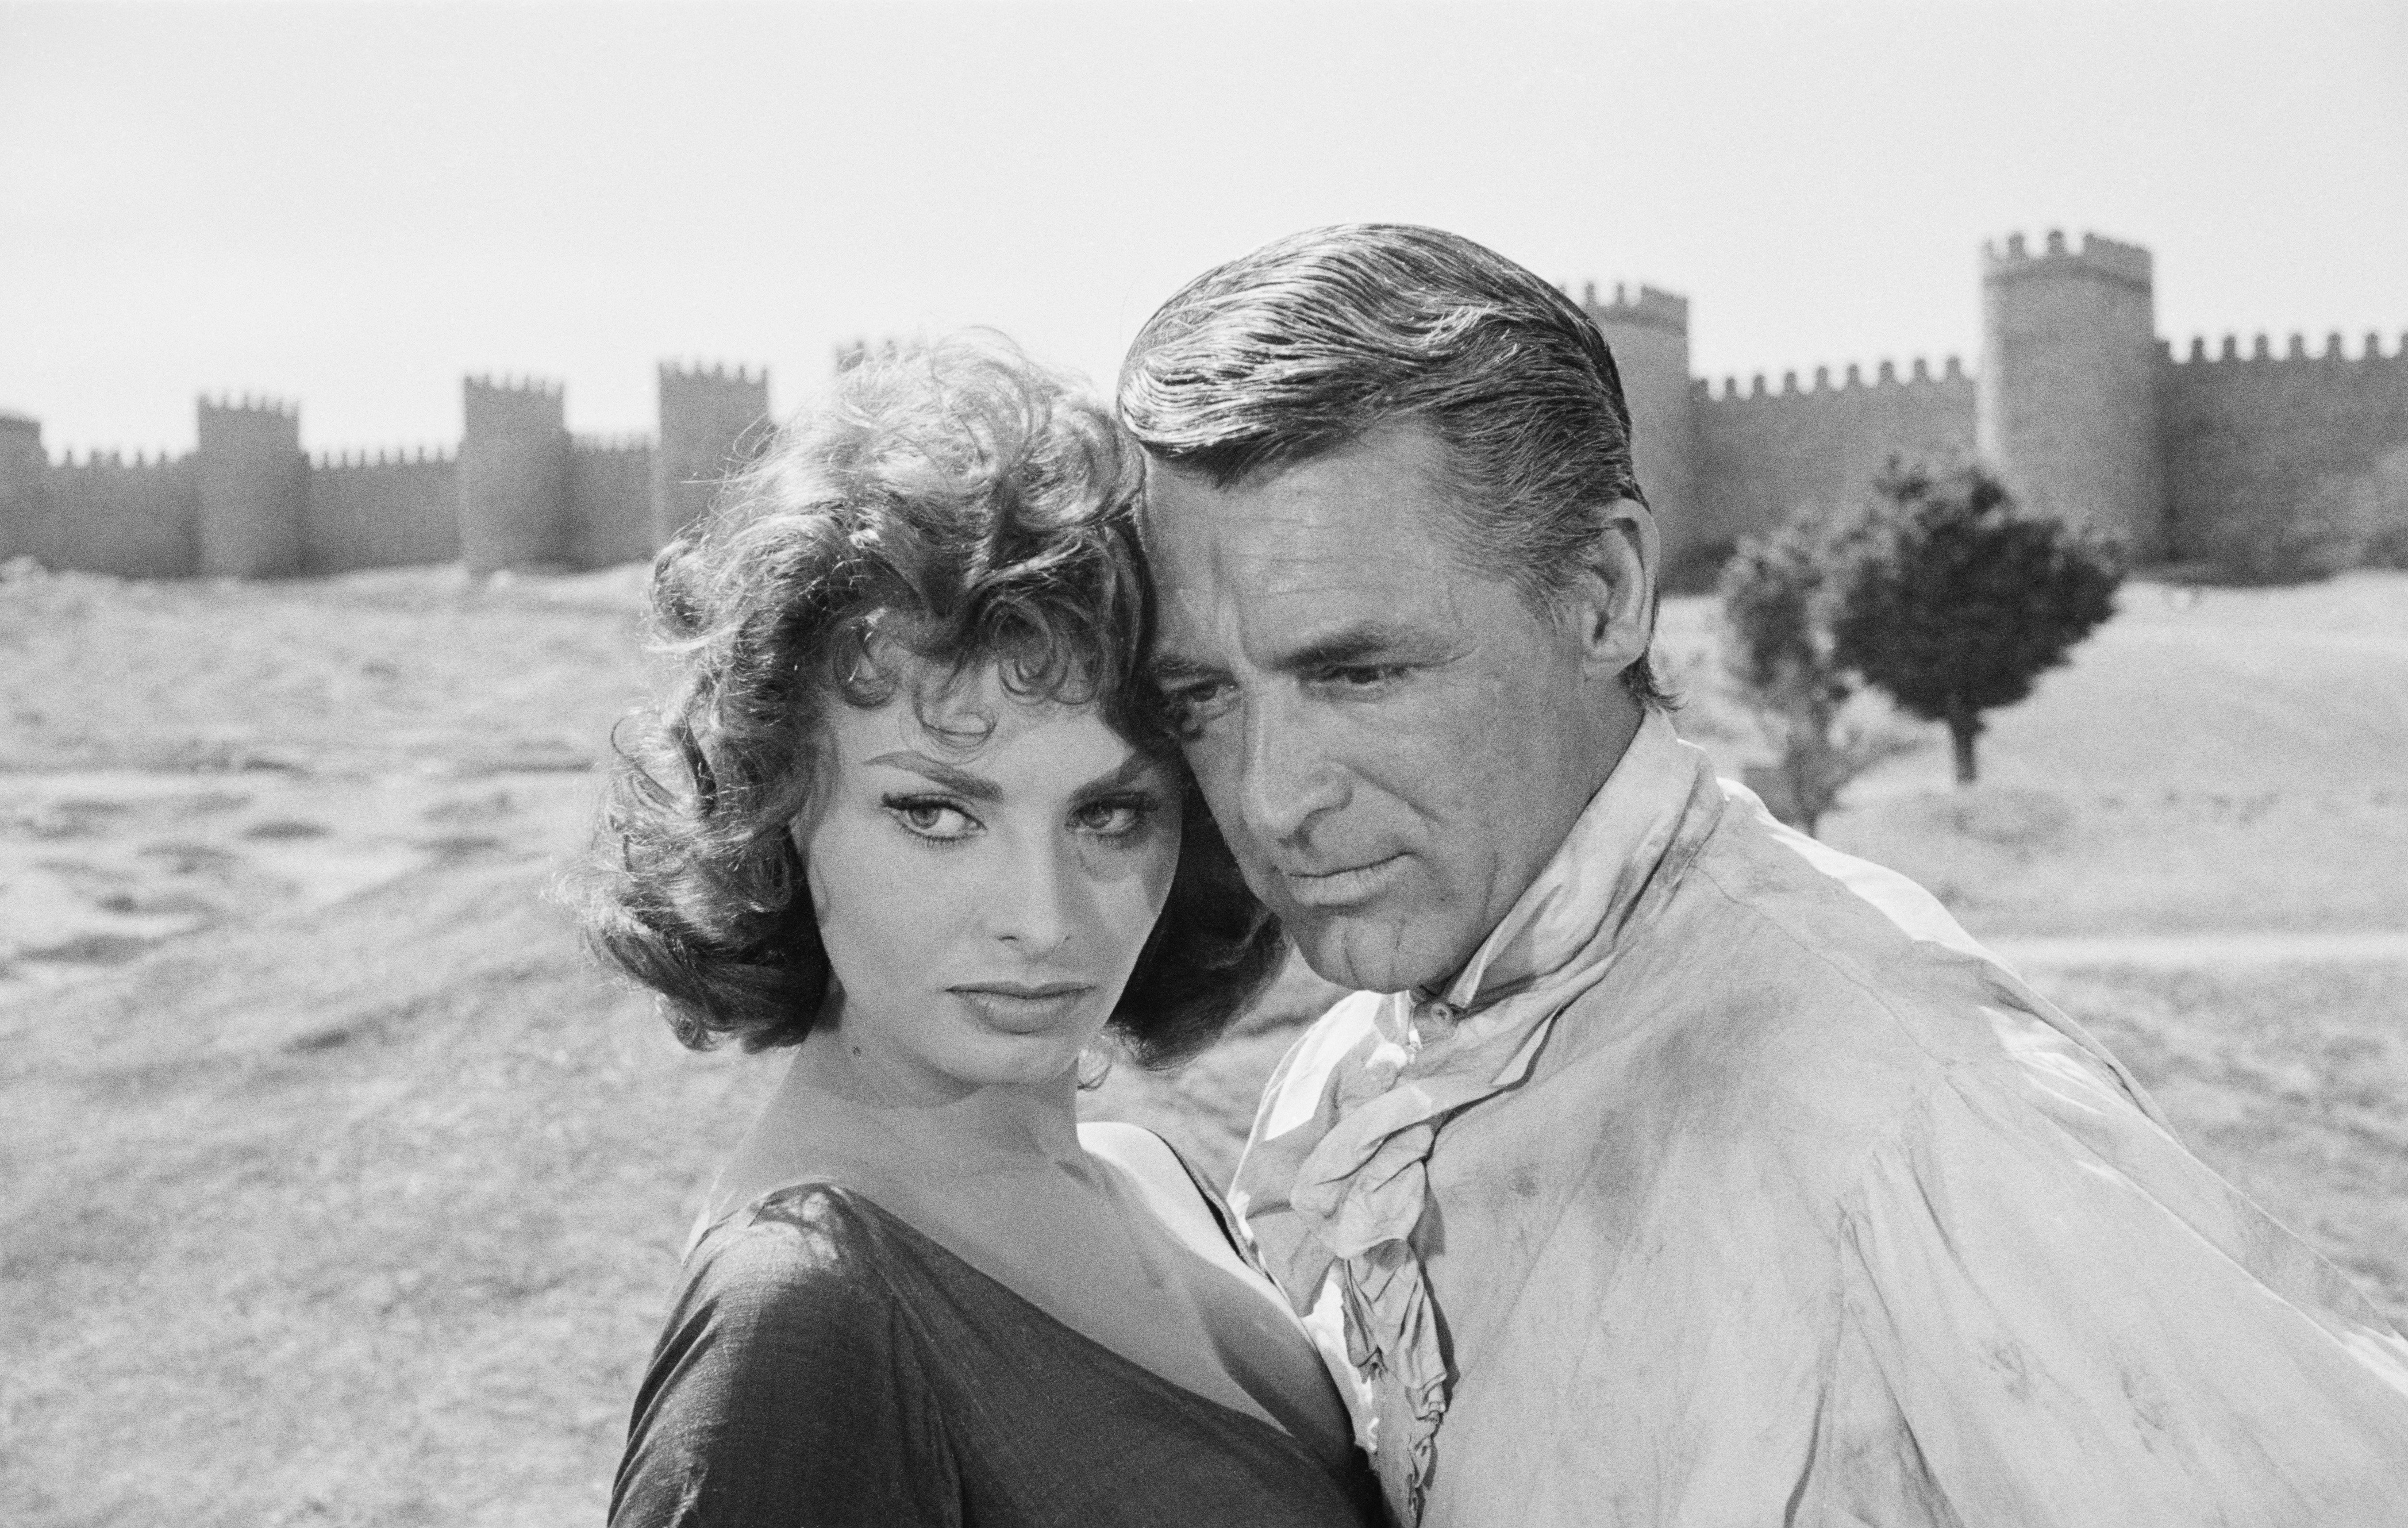 Cary Grant und Sophia Loren vor den Mauern von Avila, Spanien, während der Dreharbeiten zu "The Pride and the Passion“. | Quelle: Getty Images